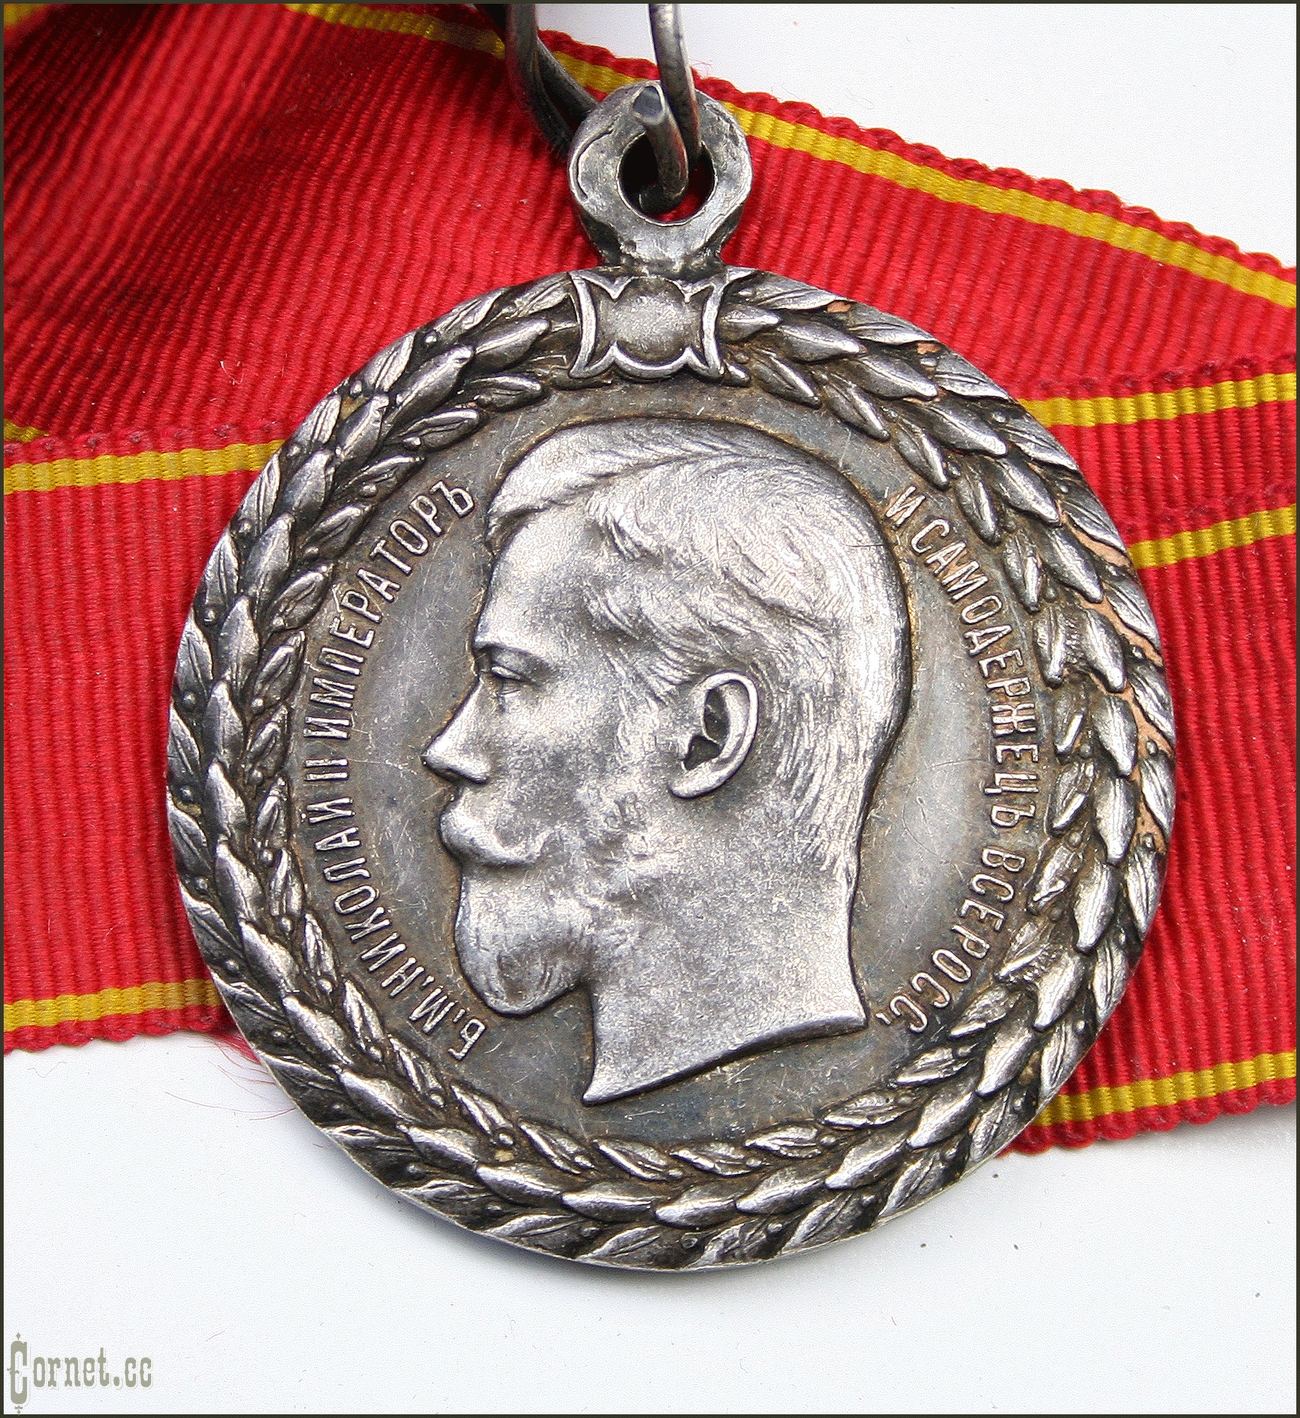 Медаль "За безпорочную службу в полиции Н2"